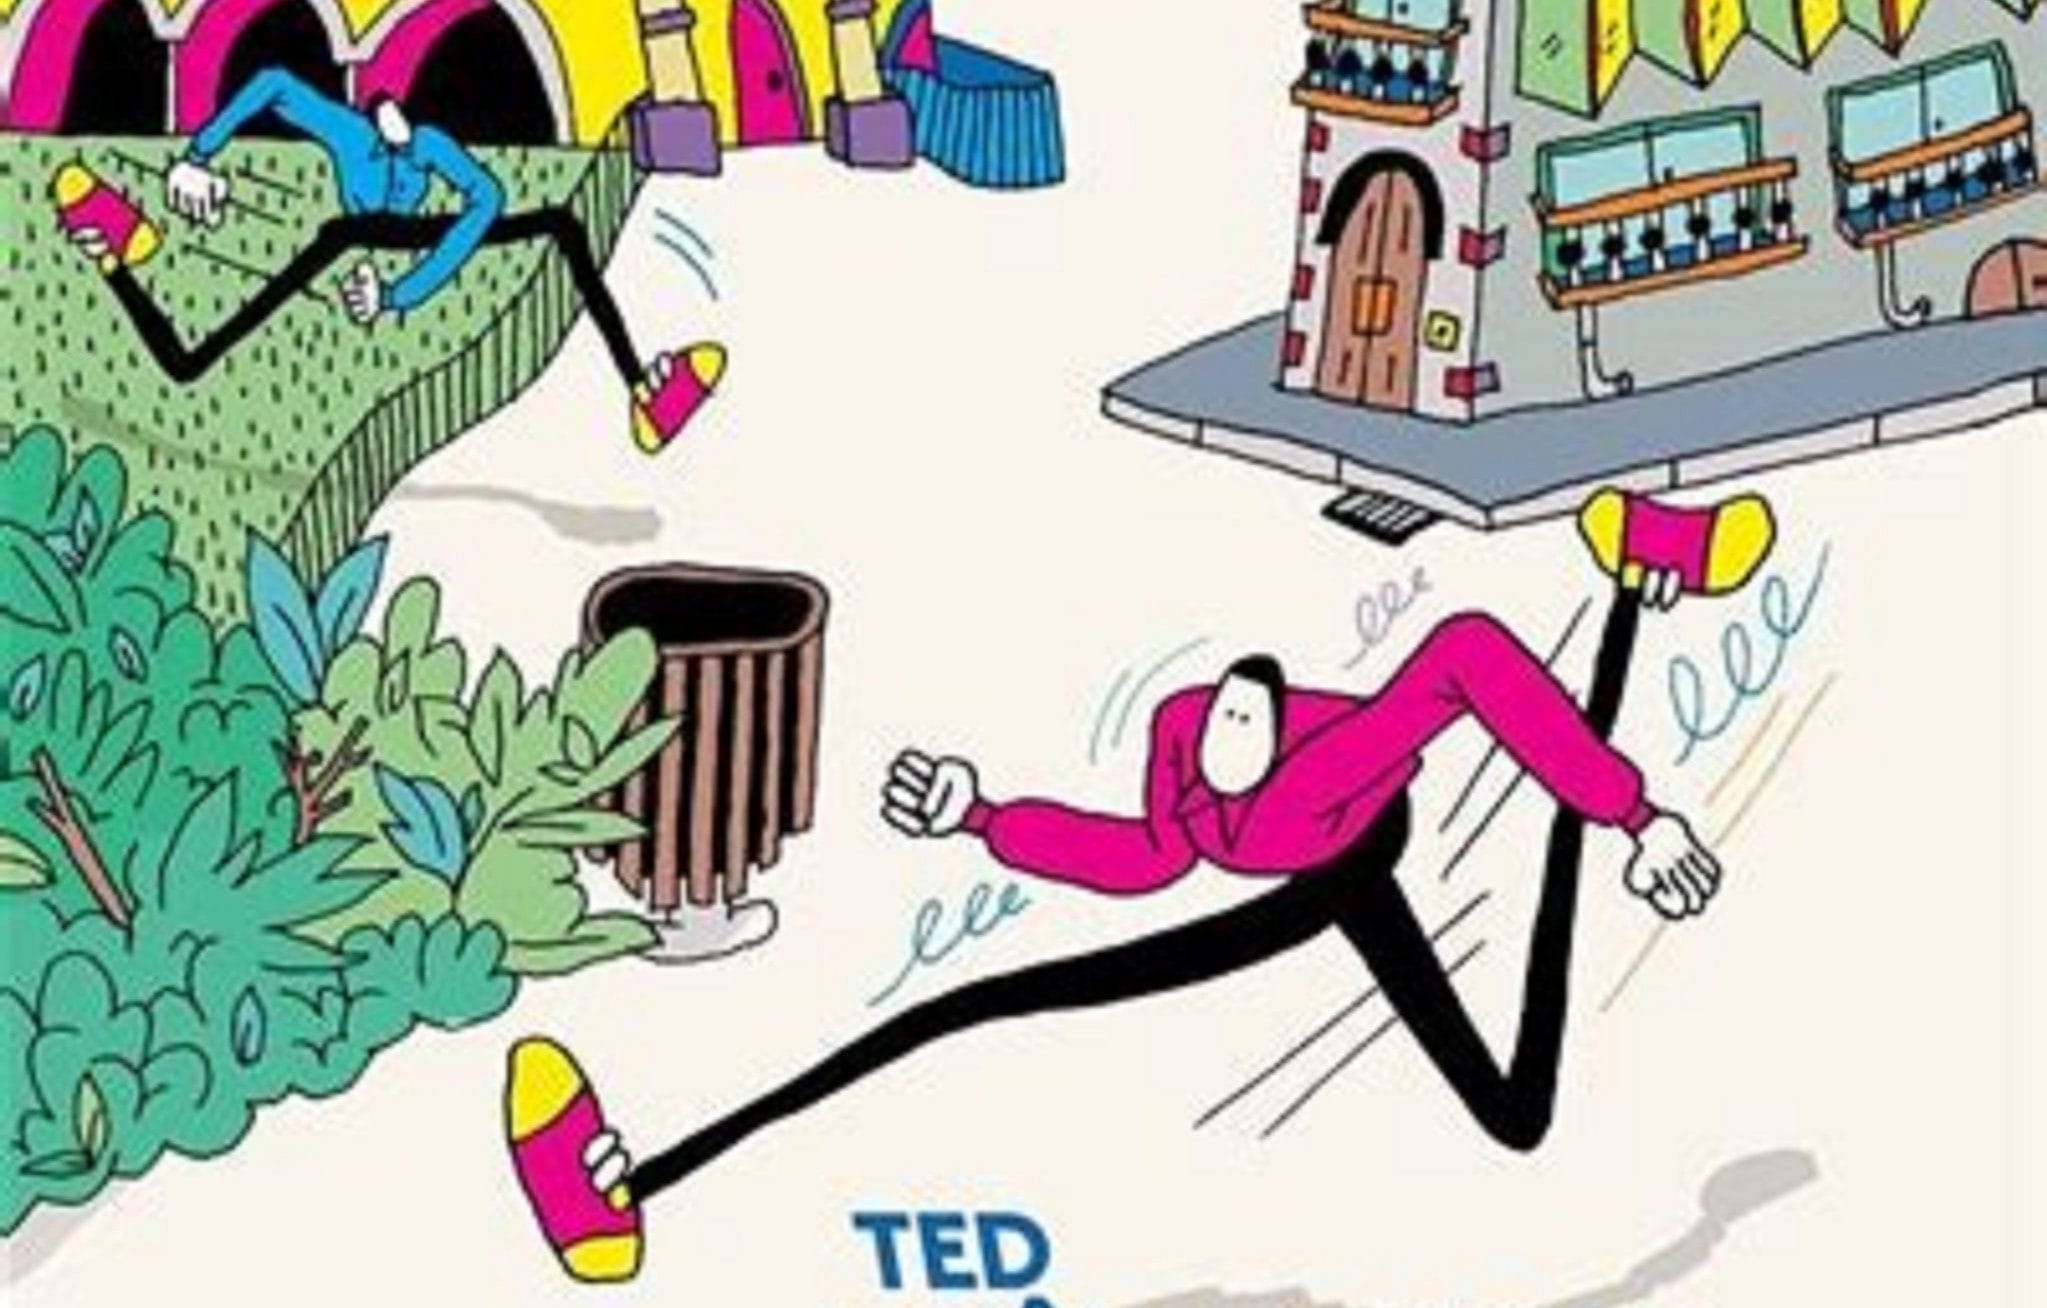 Couverture de "Ted drôle de coco" d'Emilie Gleason.